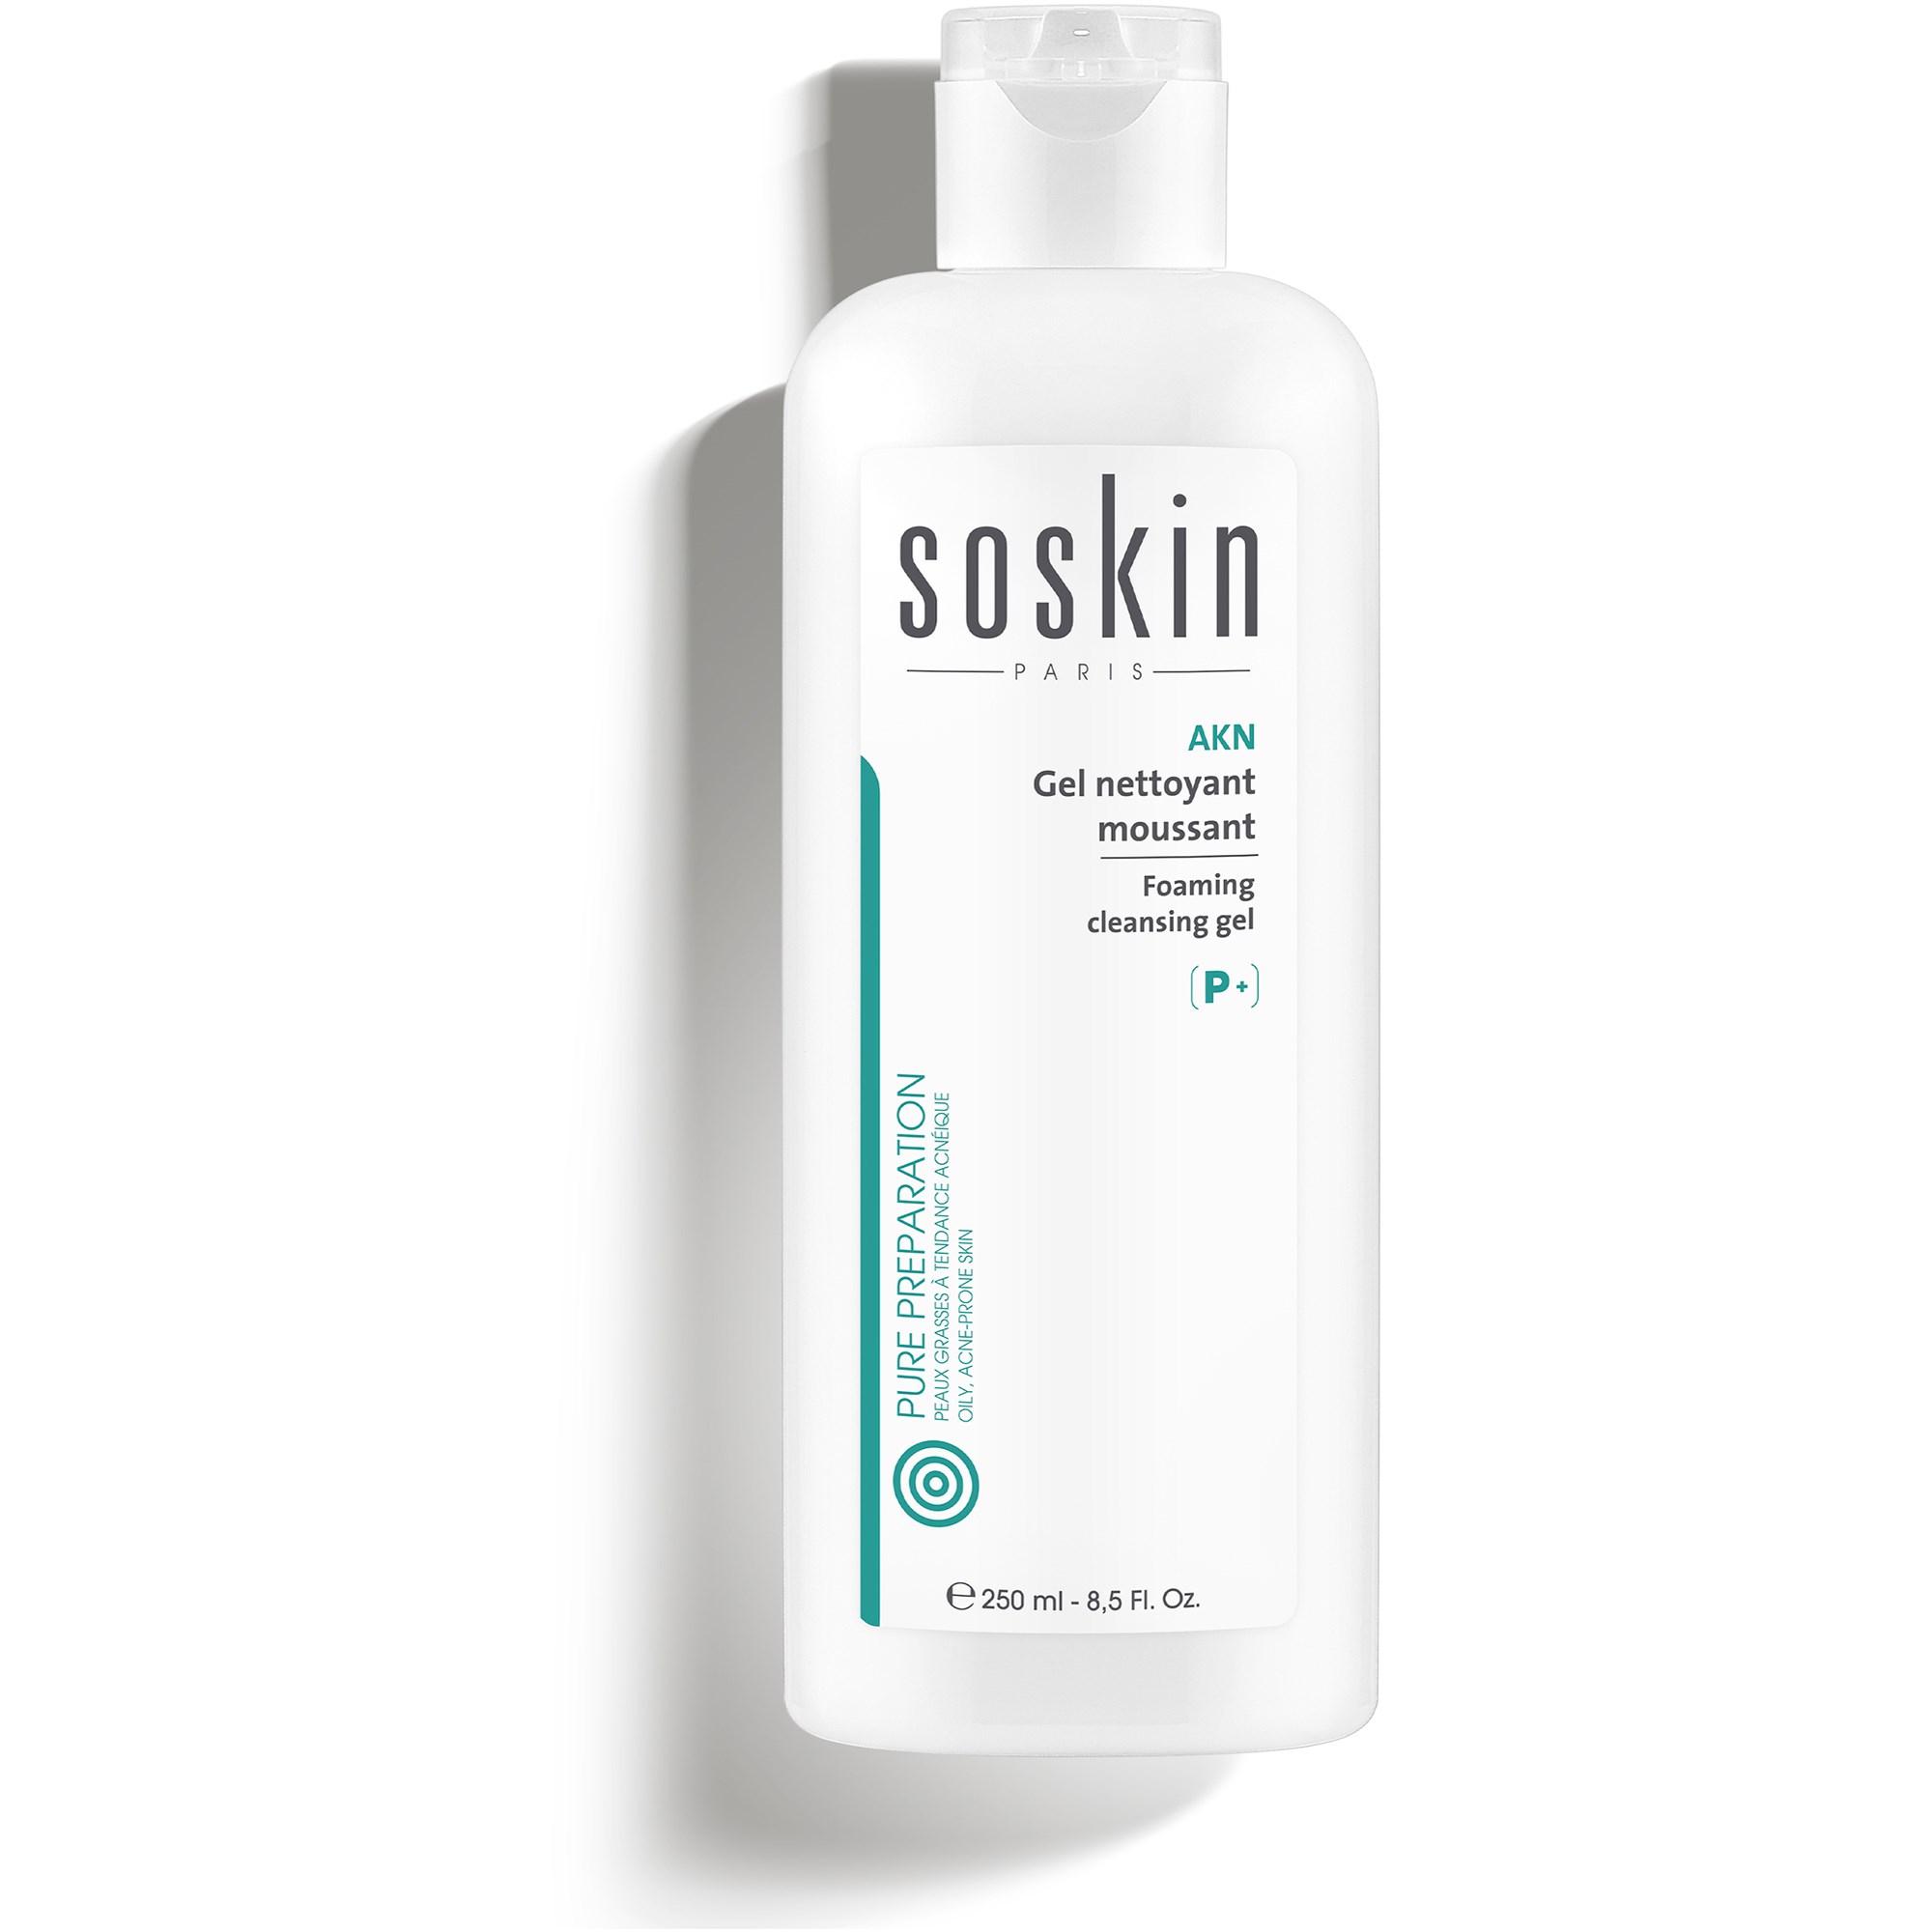 SOSkin Pure Preparations Akn Cleansing Foaming Gel 250 ml